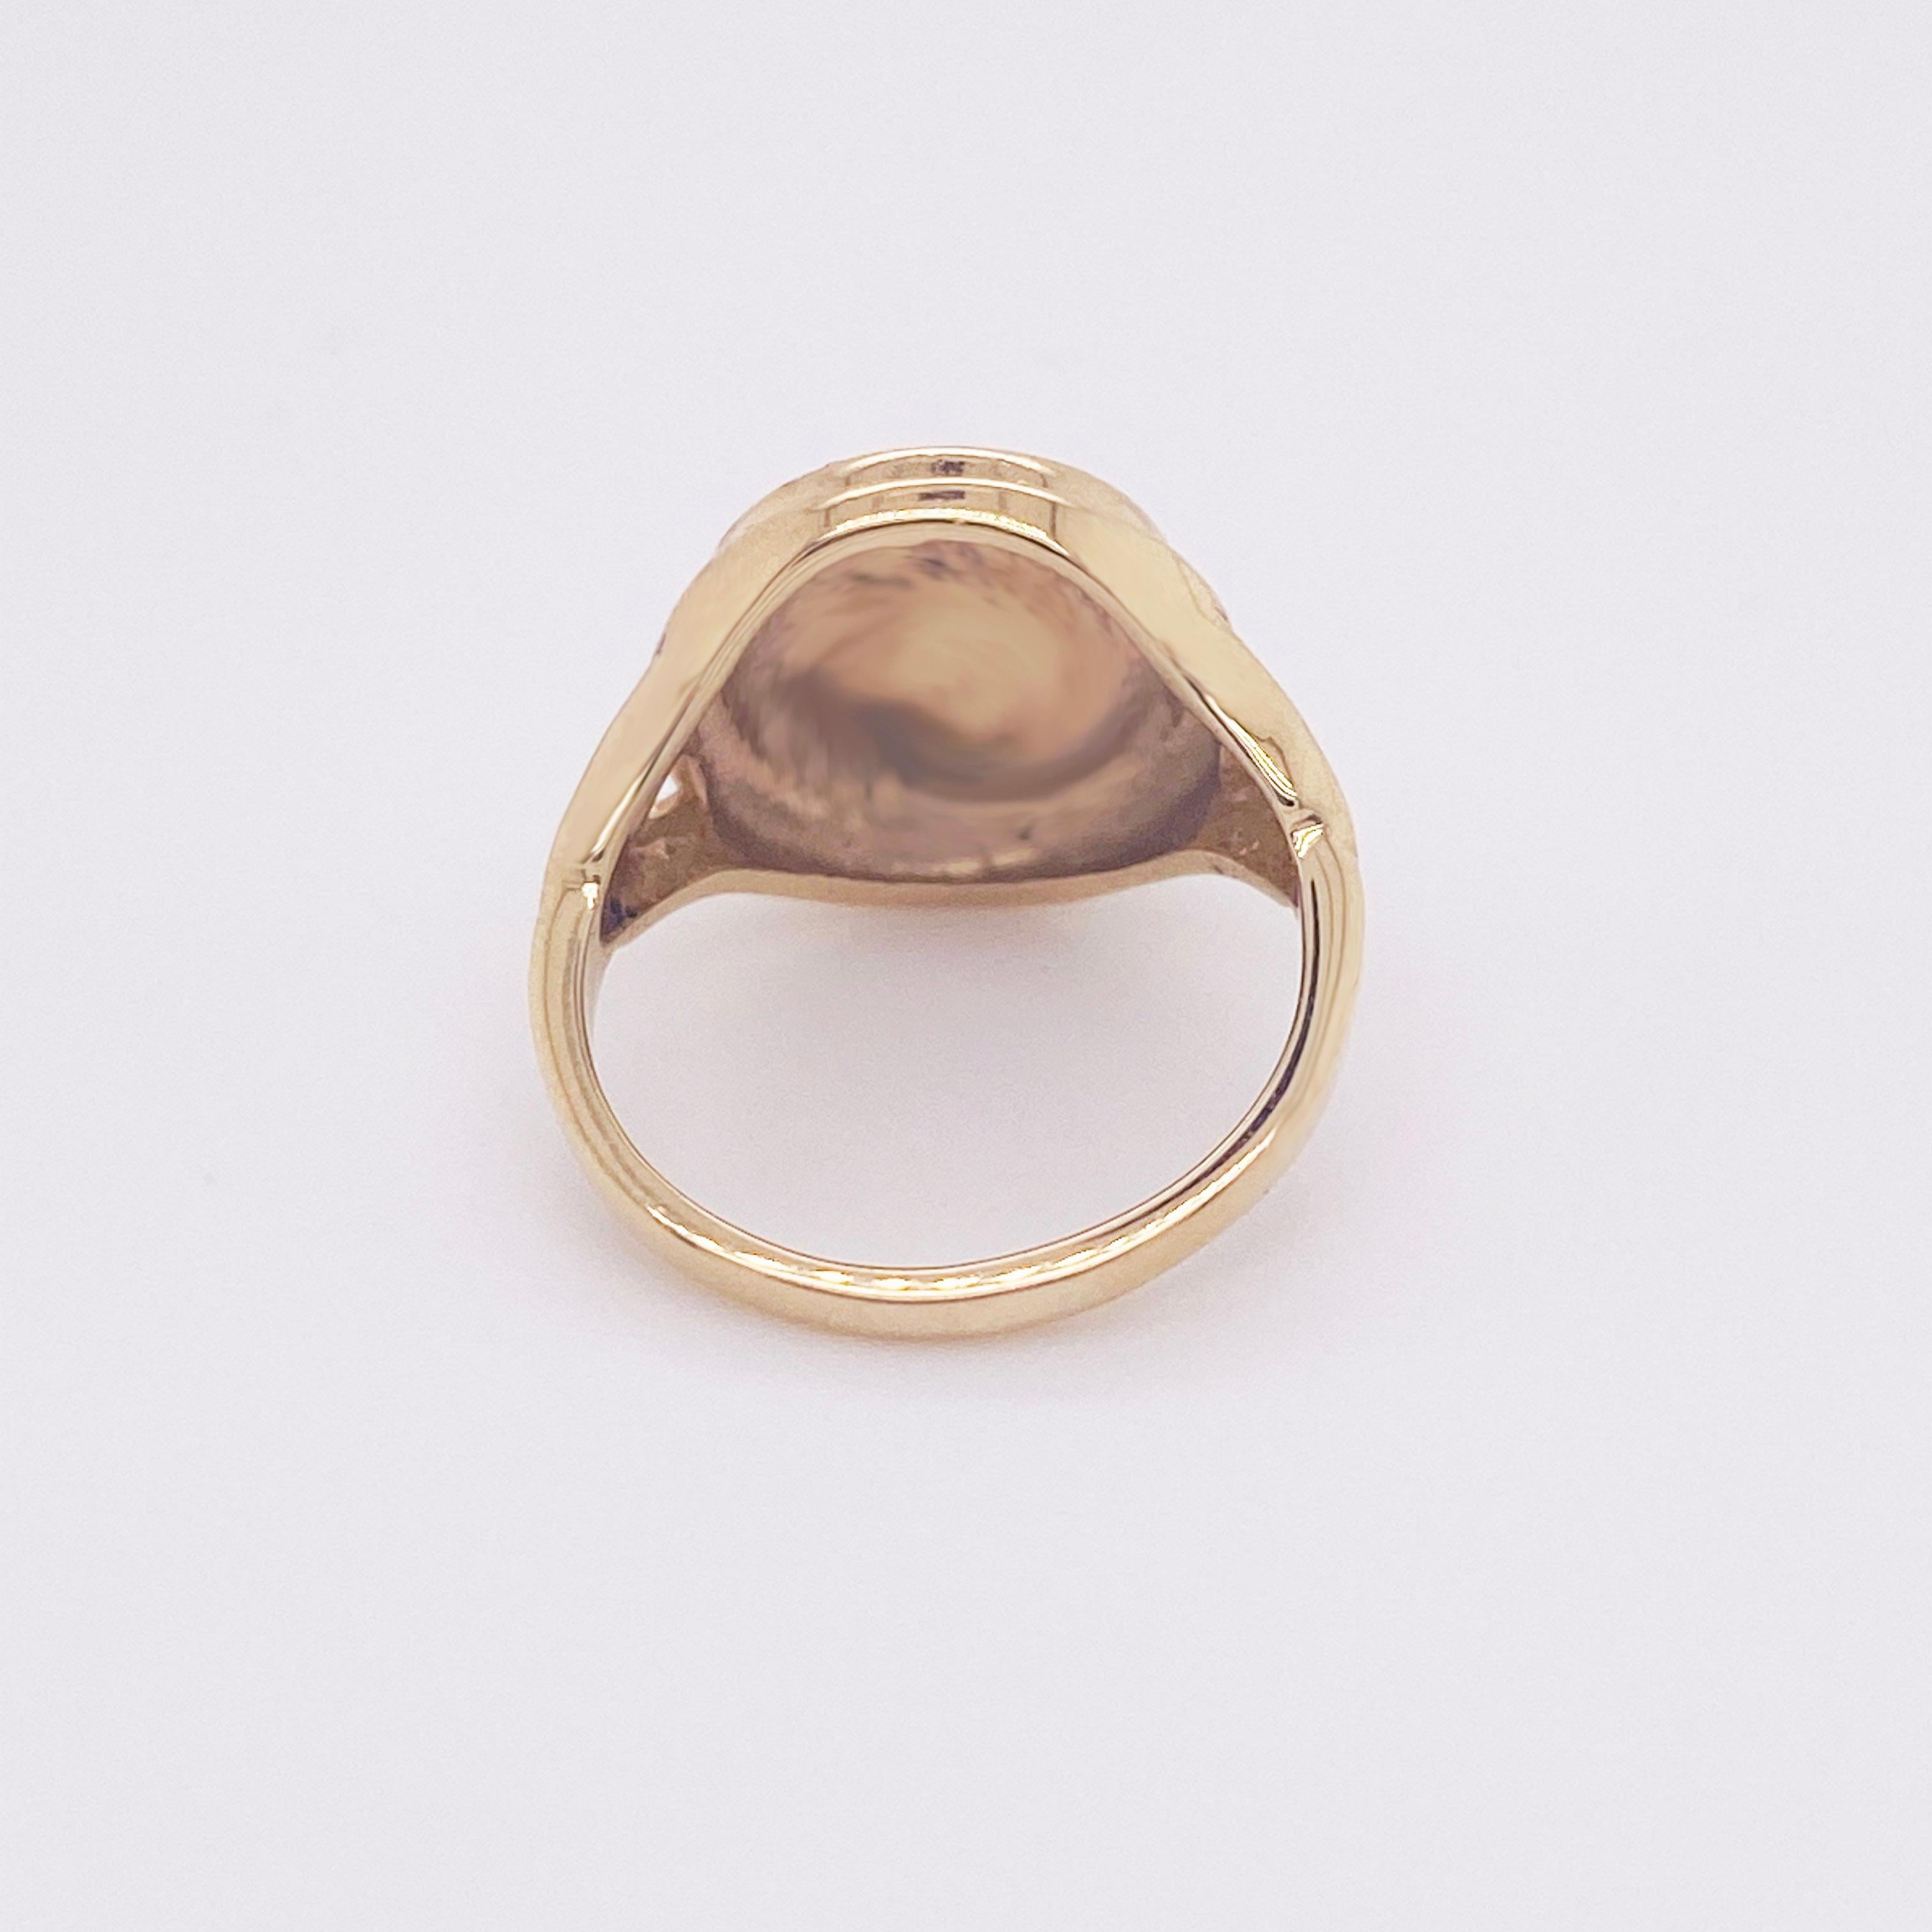 Modern Oval Signet Pinkie Ring Size 2.5 Brushed 14 Karat Gold, Monogram Initial Ring